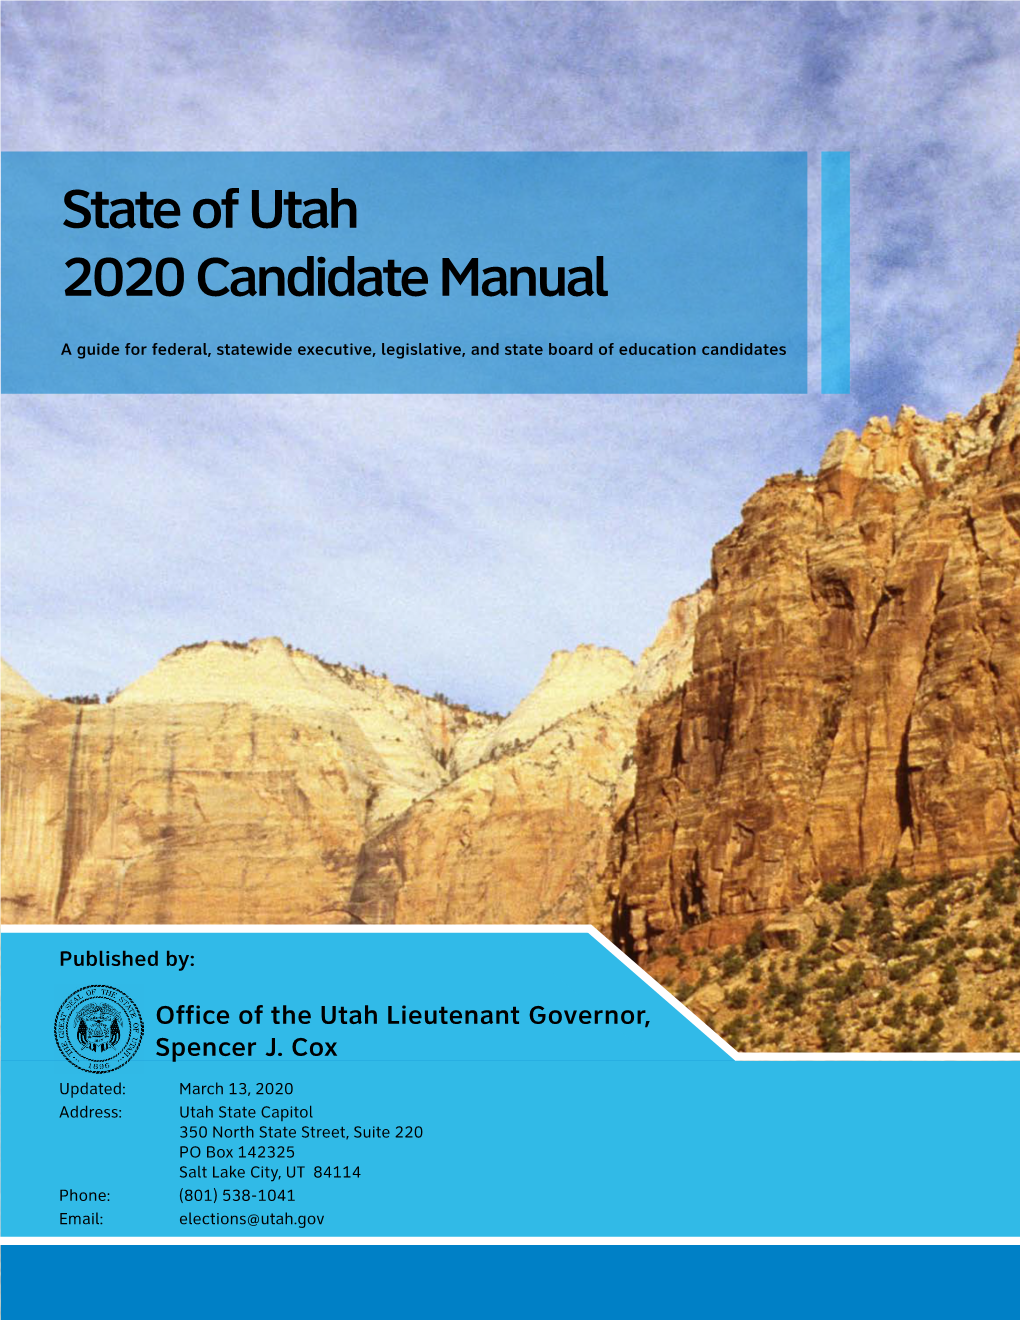 State of Utah 2020 Candidate Manual